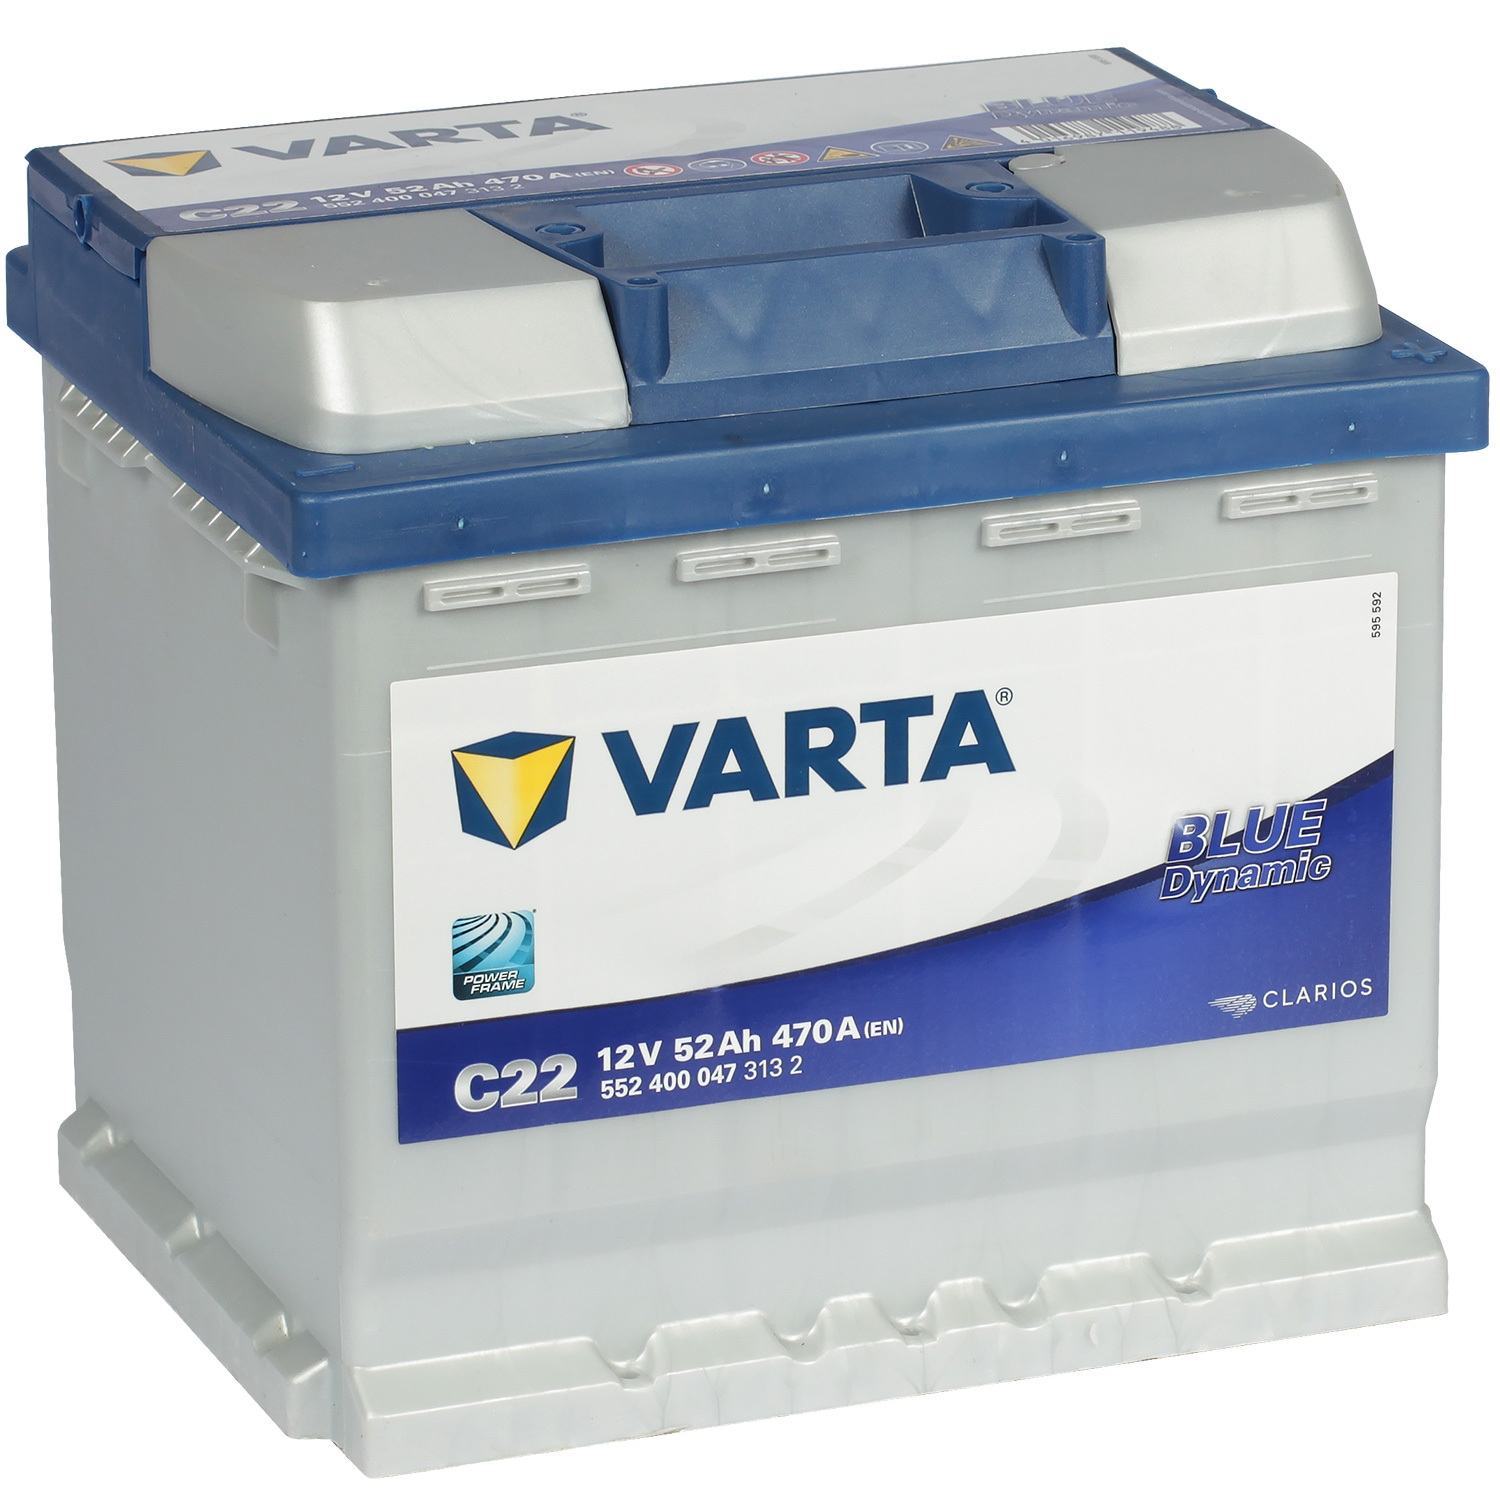 Varta Автомобильный аккумулятор Varta Blue Dynamic C22 52 Ач обратная полярность L1 цена и фото